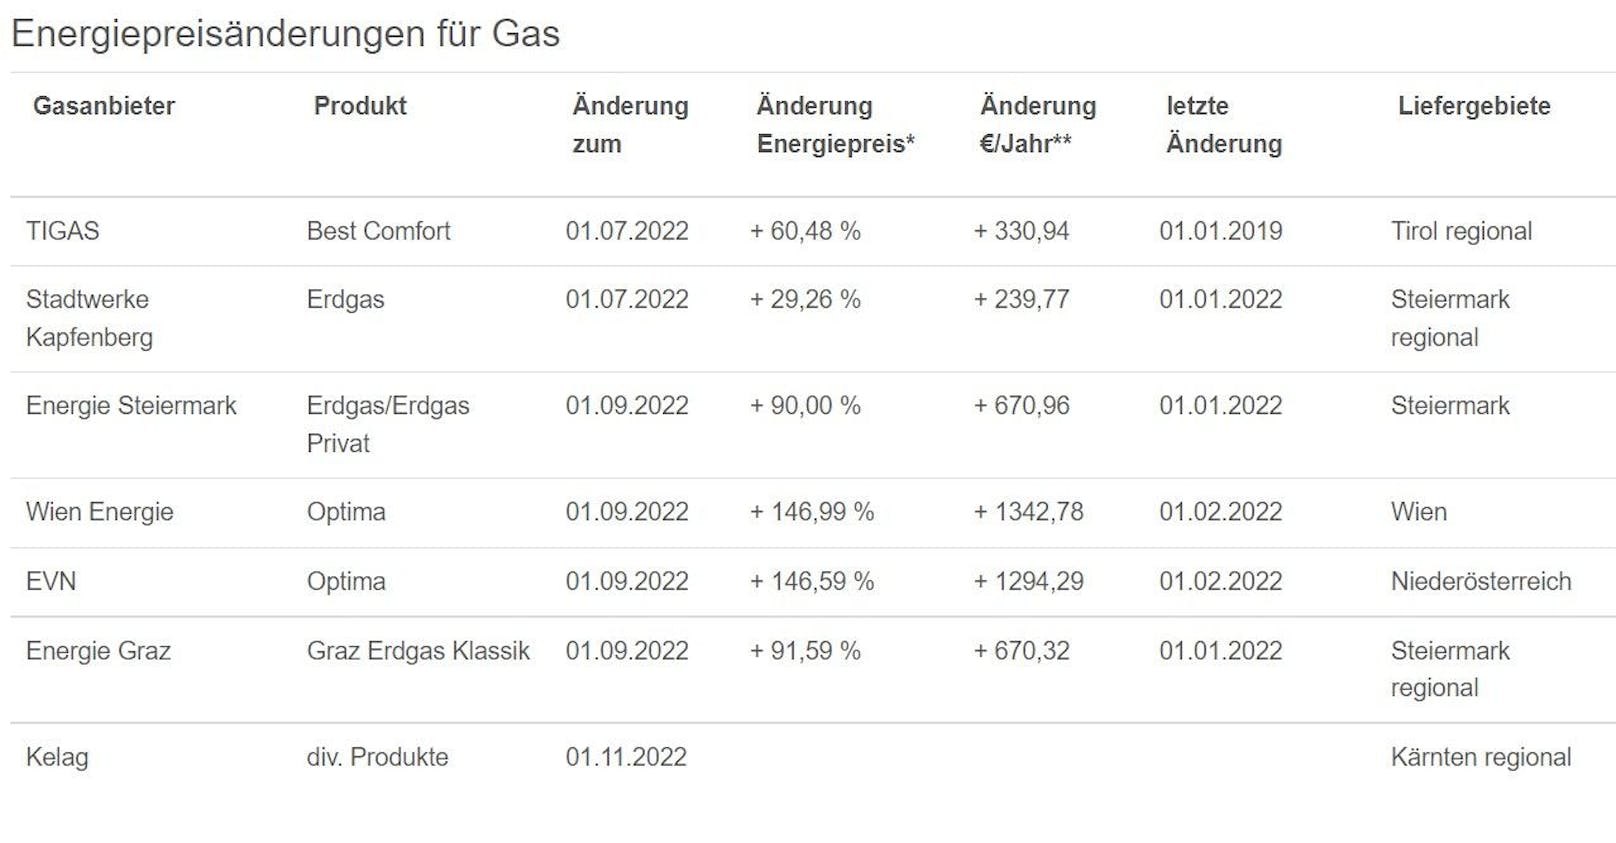 Die Liste der E-Control zeigt, wie Strom- und Gaspreise angestiegen sind.